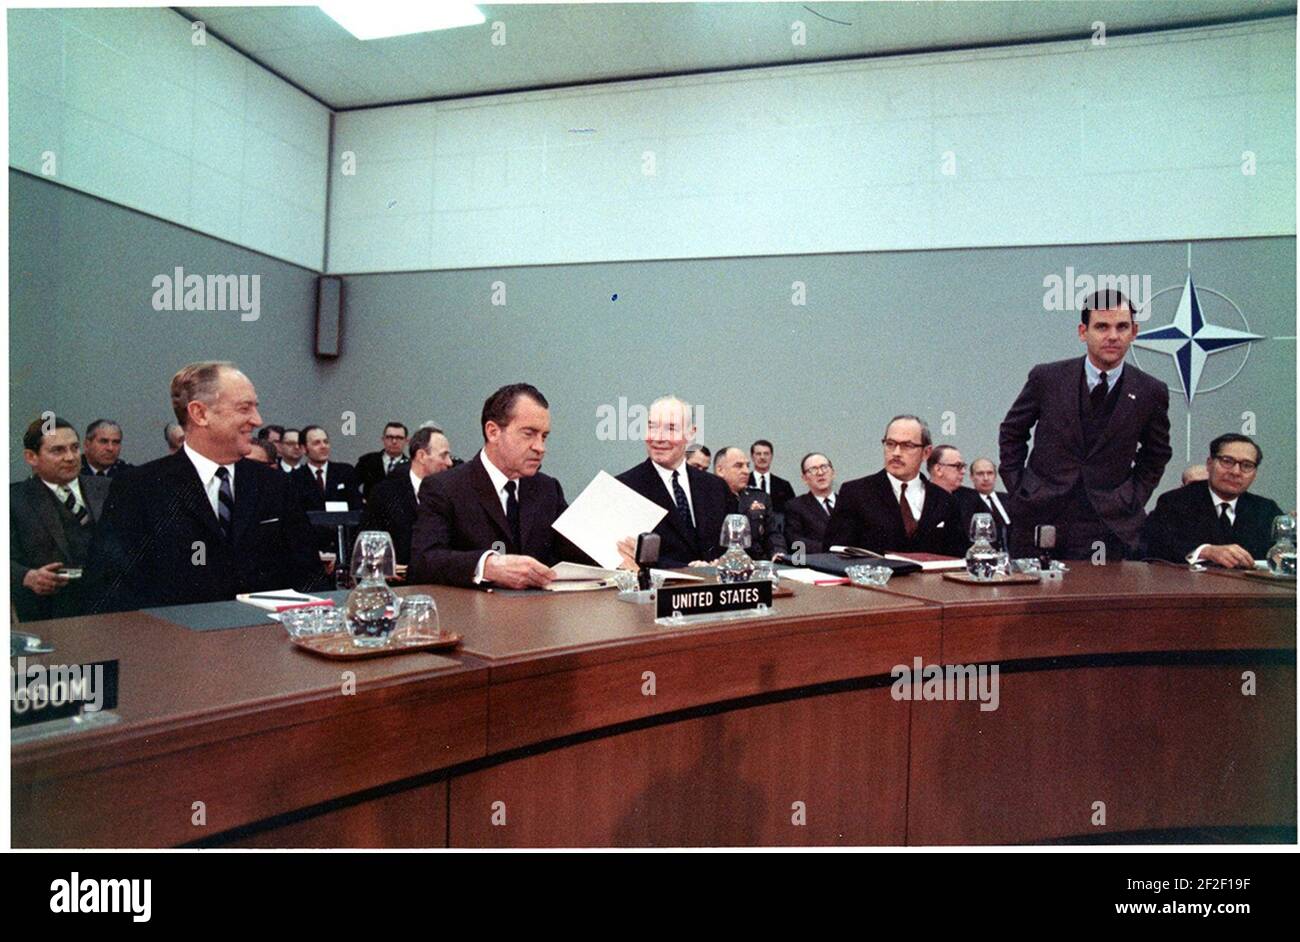 Il Presidente Richard Nixon ha presiede una riunione nella Camera del Consiglio presso la sede centrale dell'Organizzazione del Trattato Nord Atlantico (NATO) a Bruxelles, in Belgio. Foto Stock